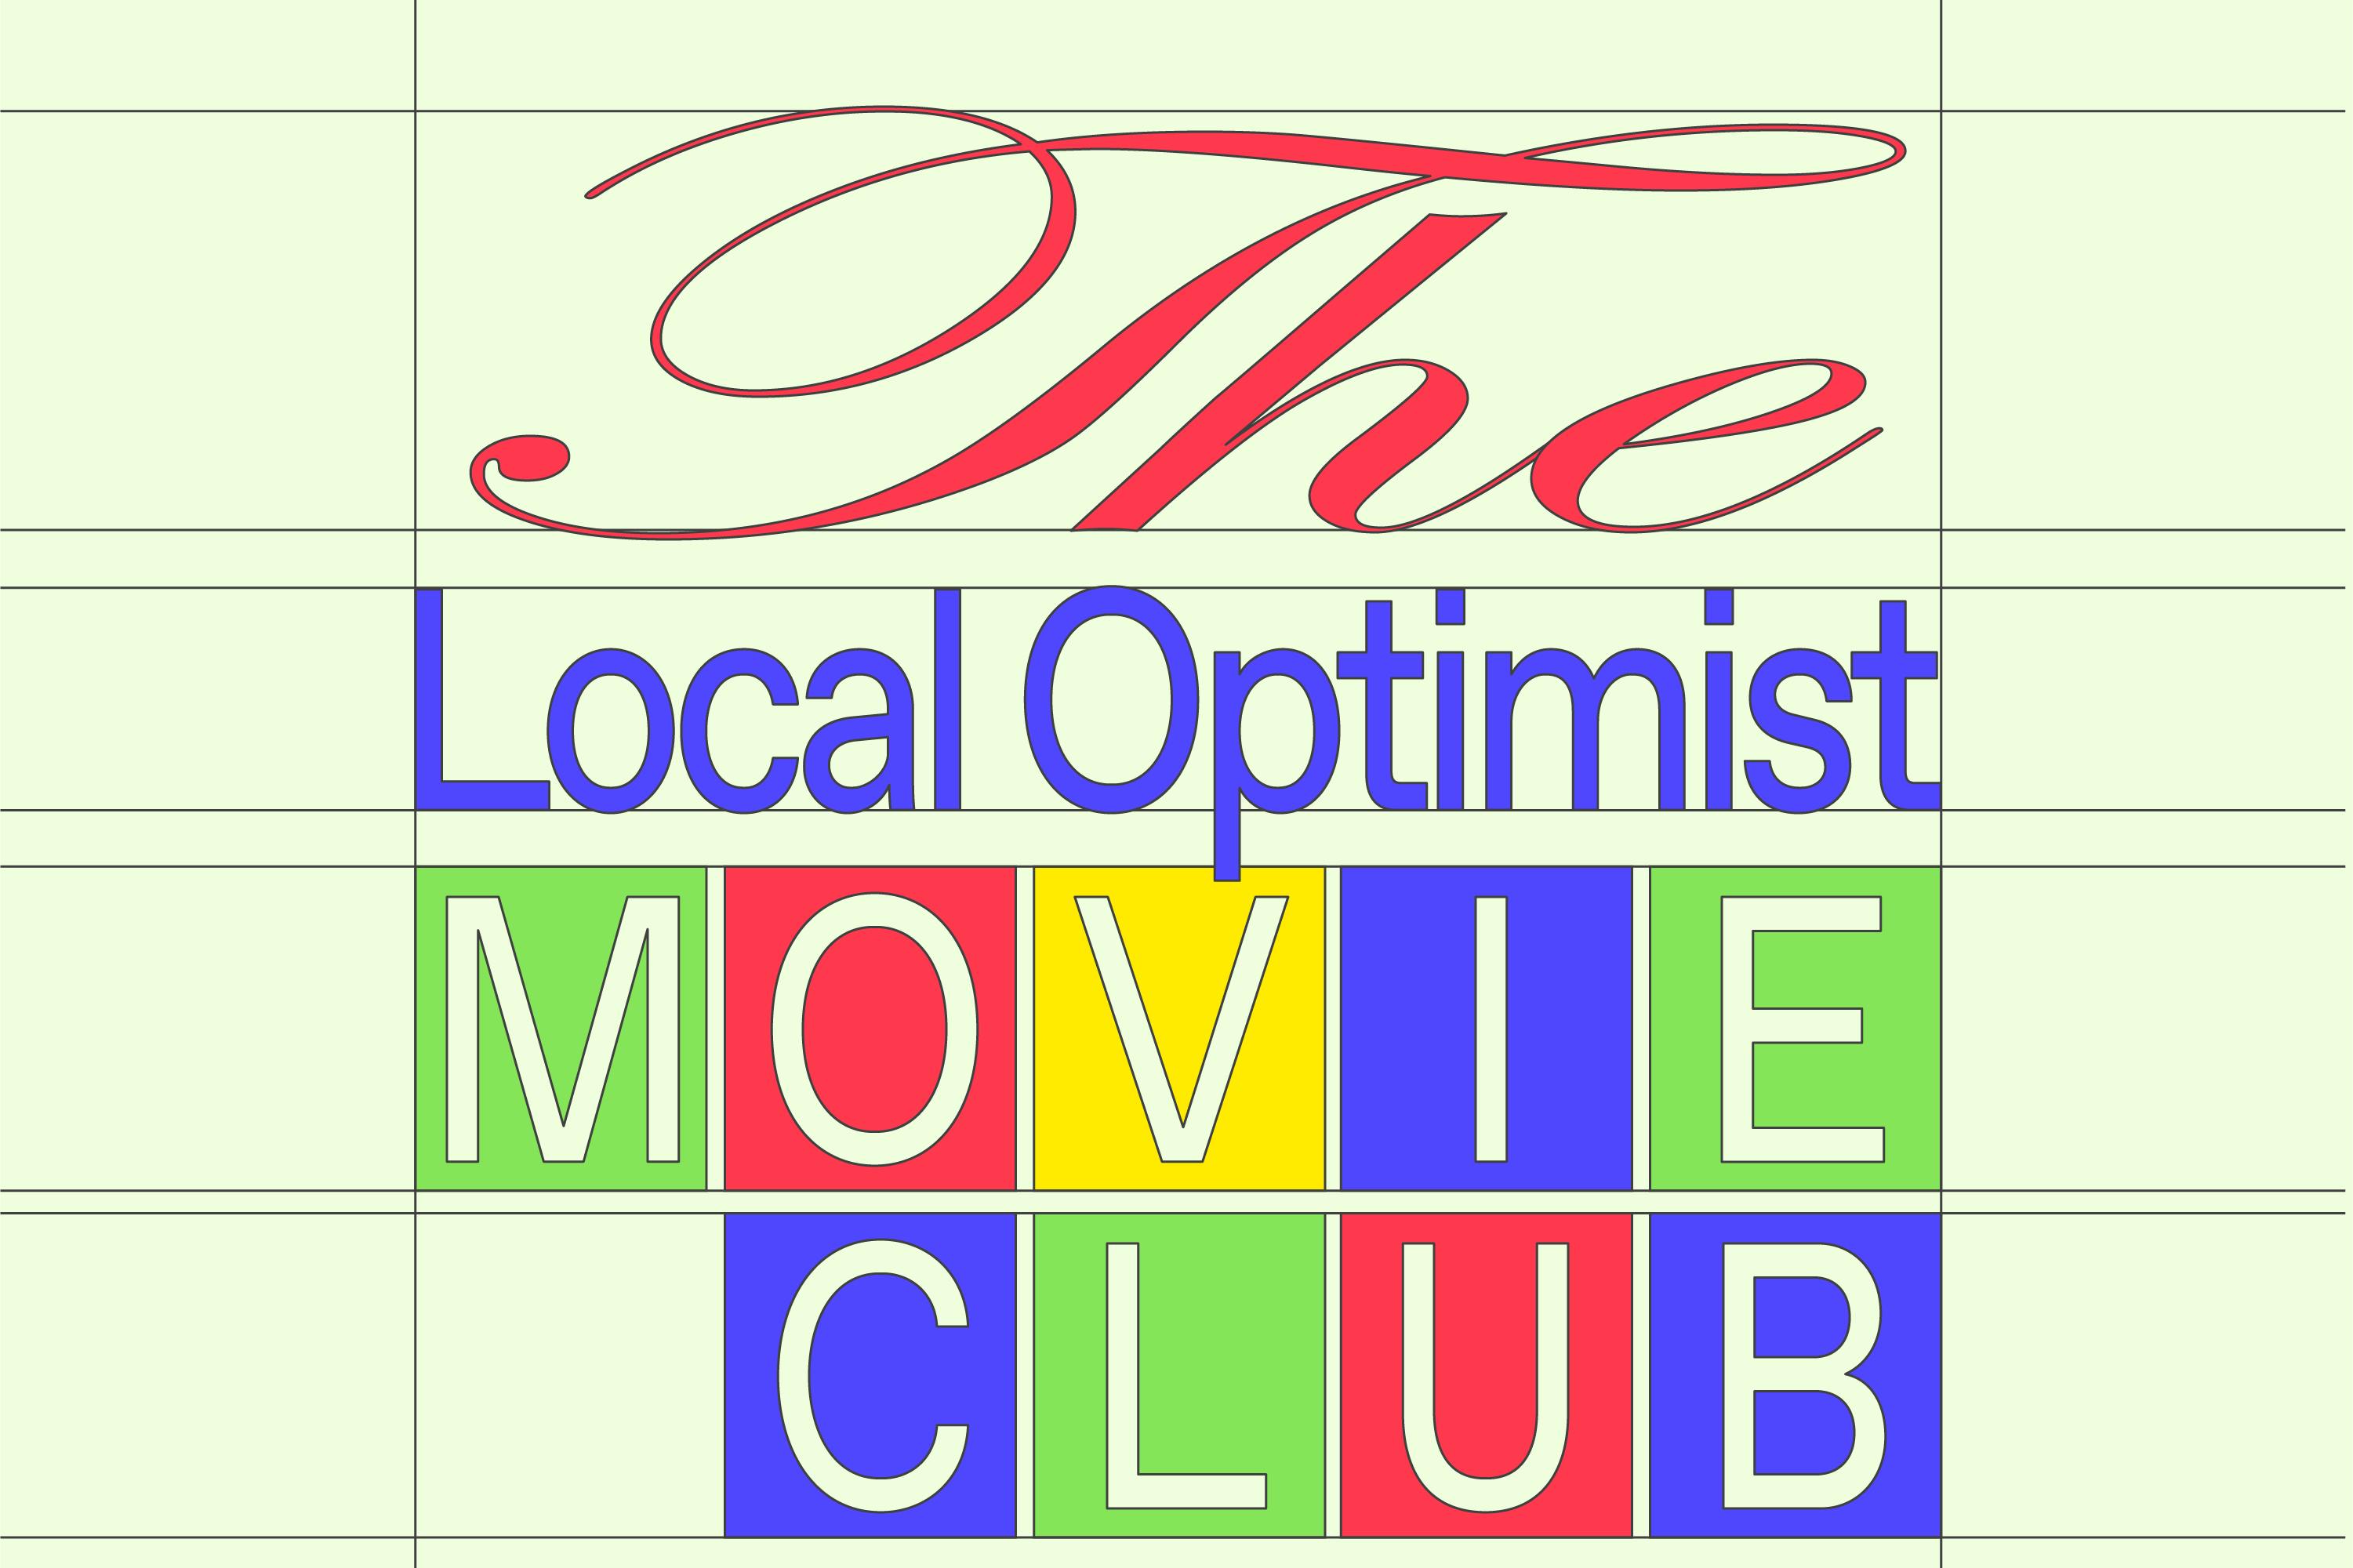 Introducing The Local Optimist Movie Club